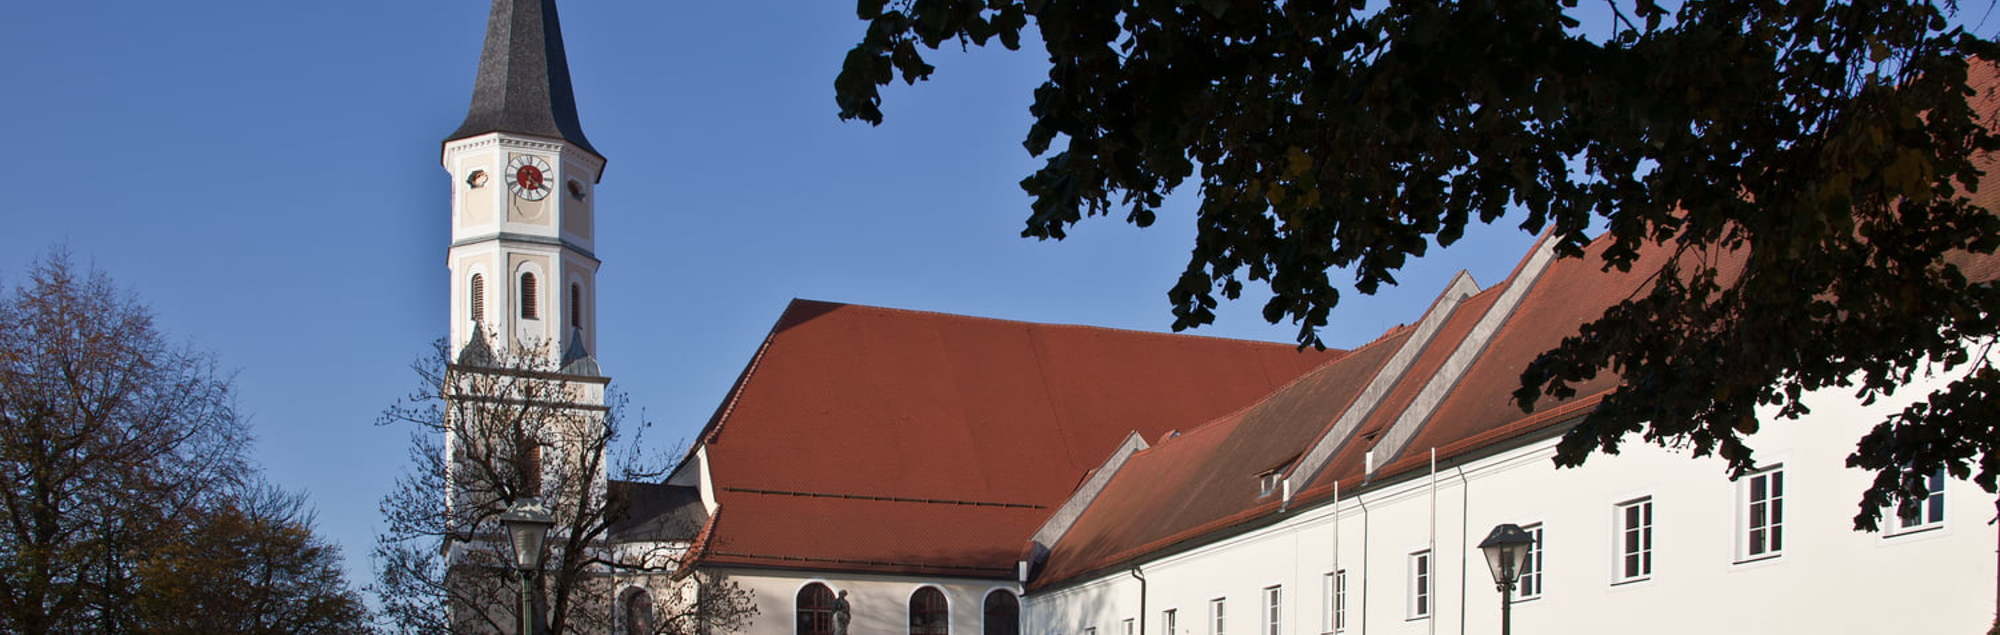 Pfarrkirche St. Pankraz